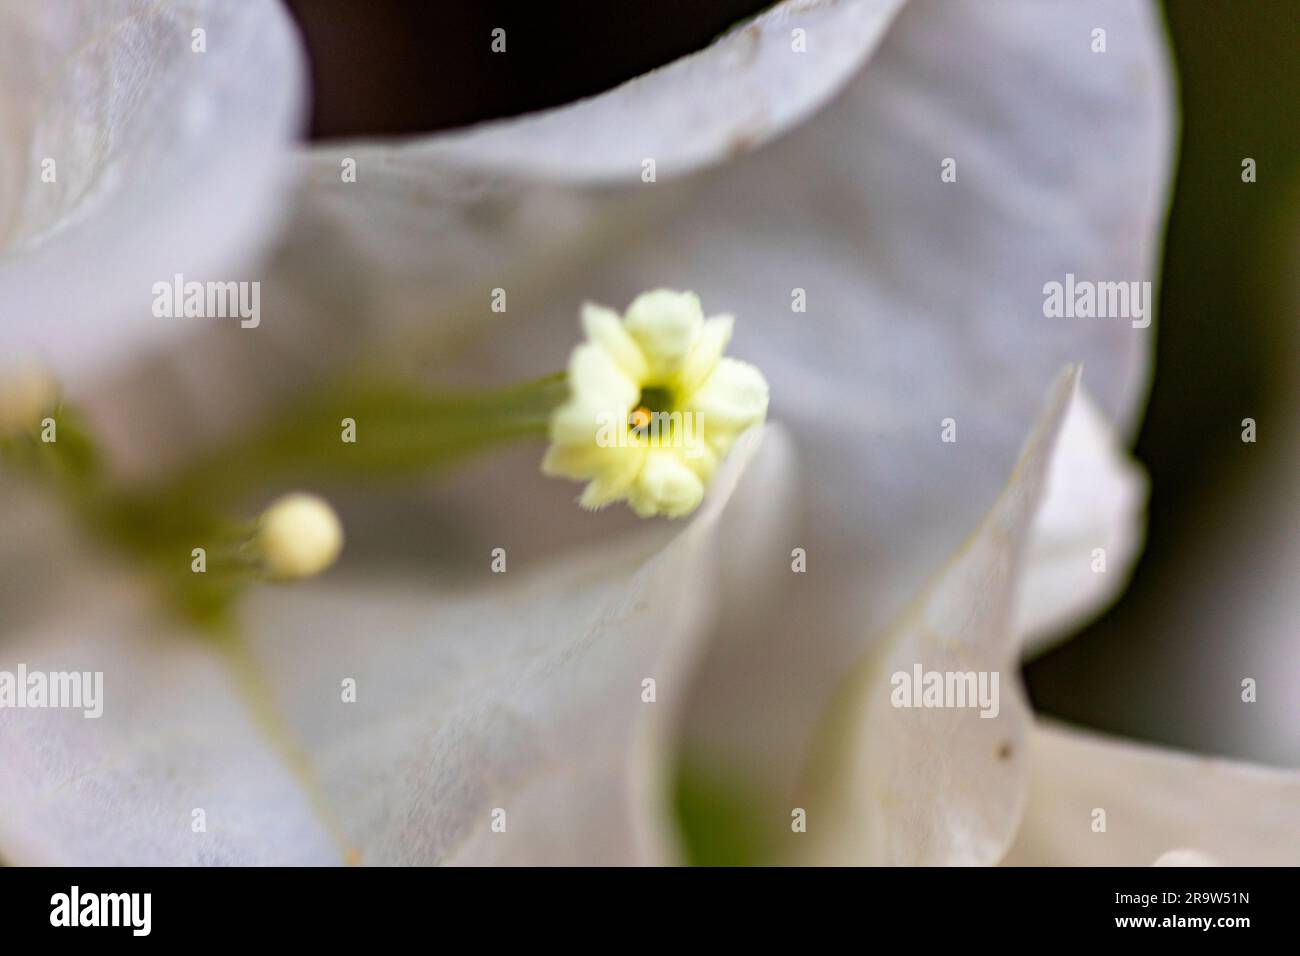 Bouganvillea papillosa bianca, a fiore singolo o doppio, che è una pianta perenne, arrampicata, legnosa che raggiunge una grande altezza. Concetto vario e conf Foto Stock